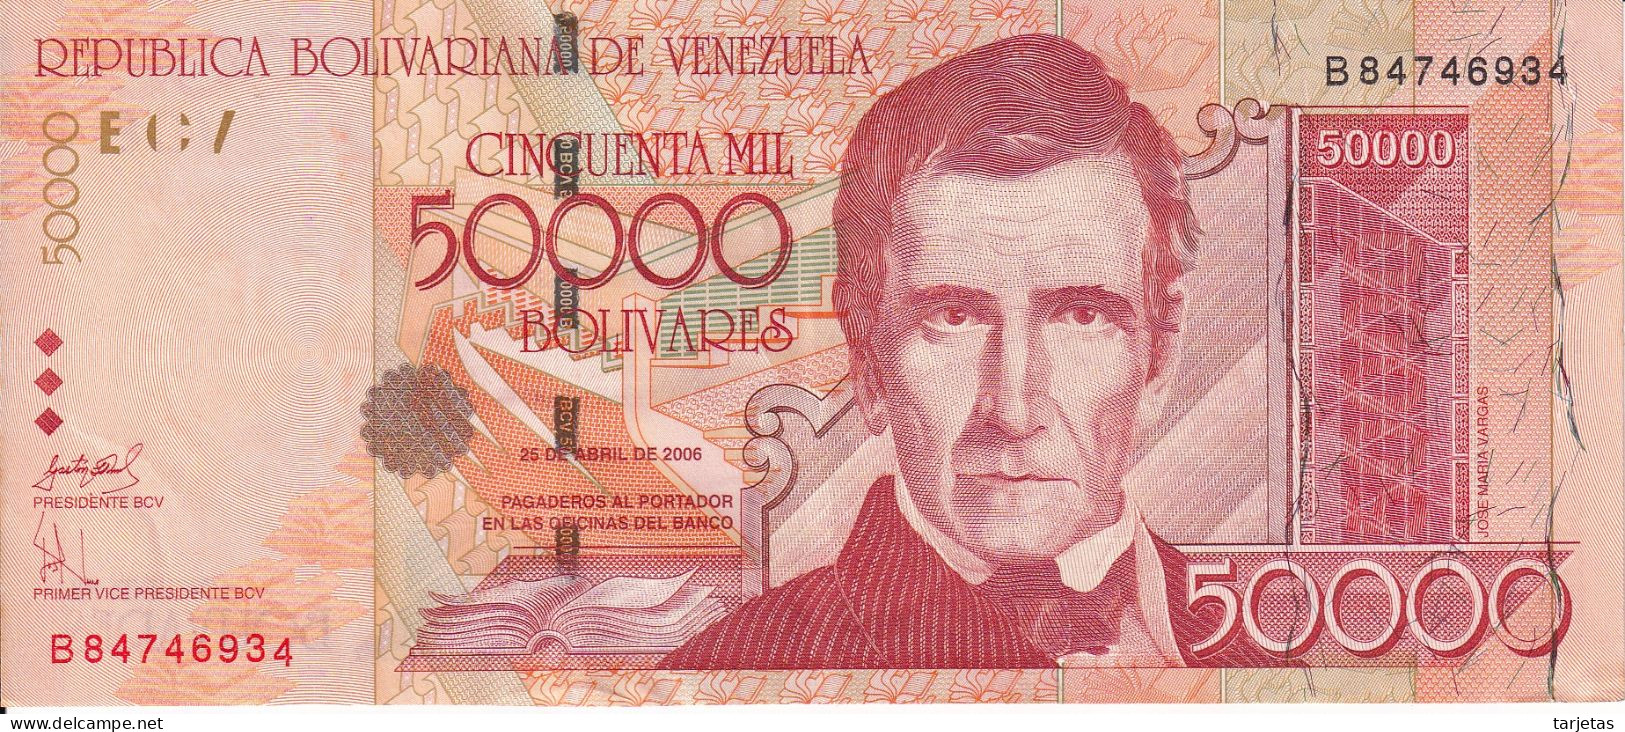 BILLETE DE VENEZUELA DE 50000 BOLIVARES DEL AÑO 2006 EN CALIDAD EBC (XF)  (BANK NOTE) - Venezuela